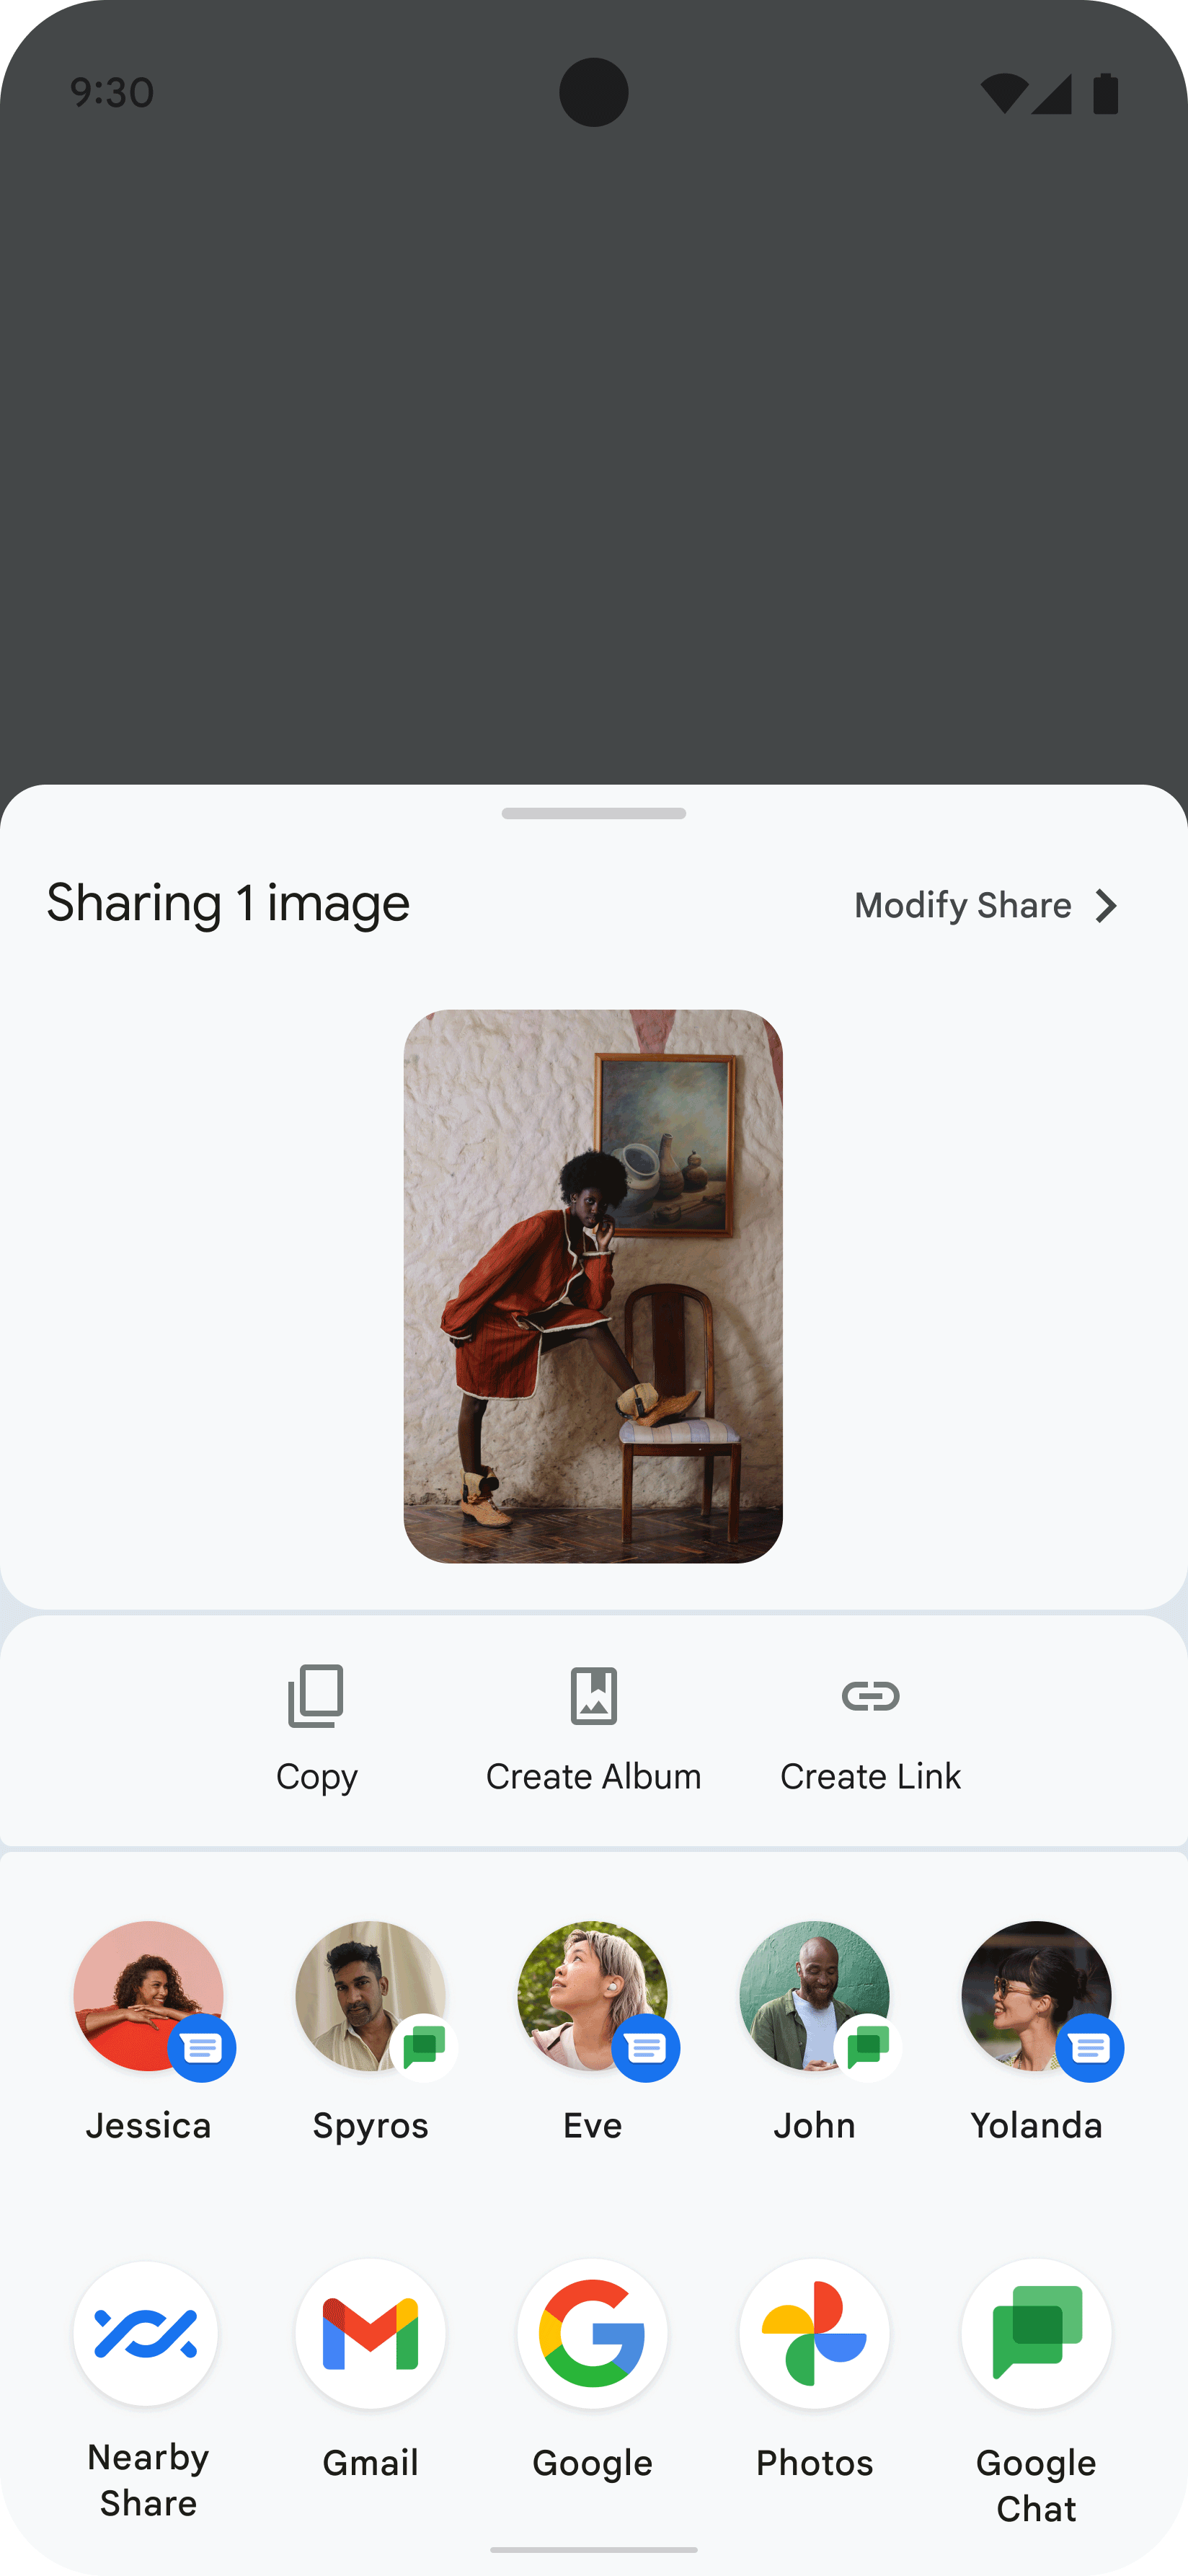 Gambar ini menunjukkan sharesheet yang ditampilkan di aplikasi, hasil dari pengguna
  yang membagikan gambar seseorang. Sharesheet menampilkan beberapa ikon
  yang merepresentasikan kemungkinan kontak dan aplikasi untuk berbagi gambar.